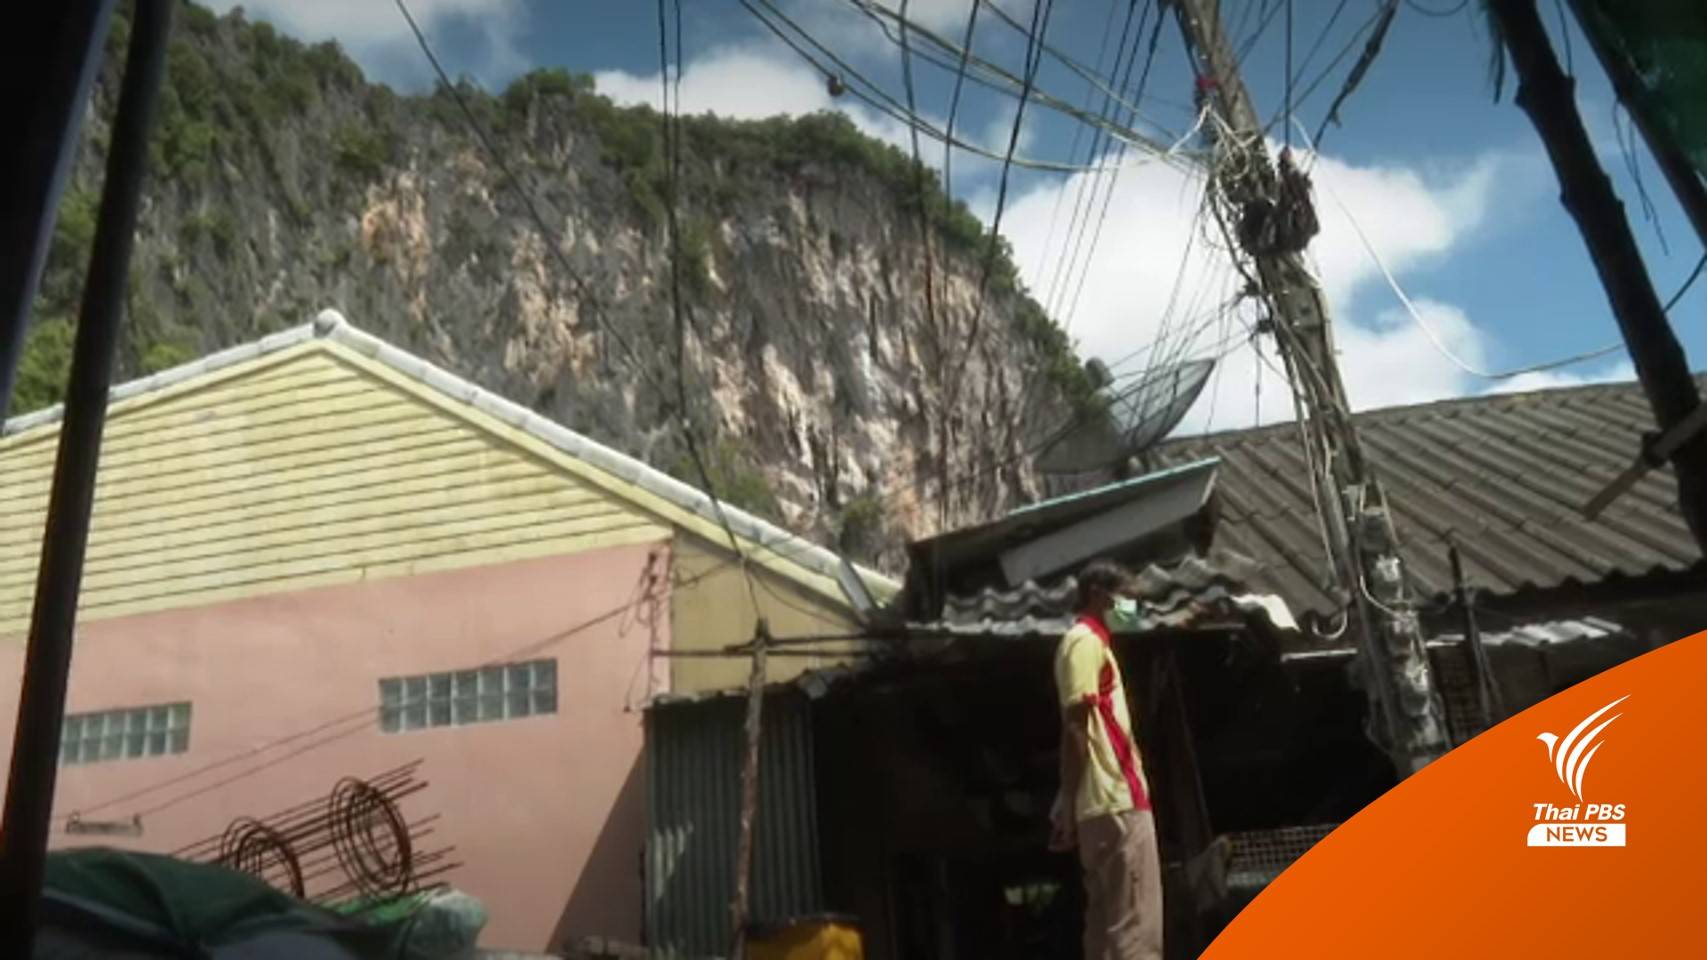 ชาวบ้านคาดหวัง อบต.เกาะปันหยีแก้ปัญหาค่าไฟฟ้าแพง